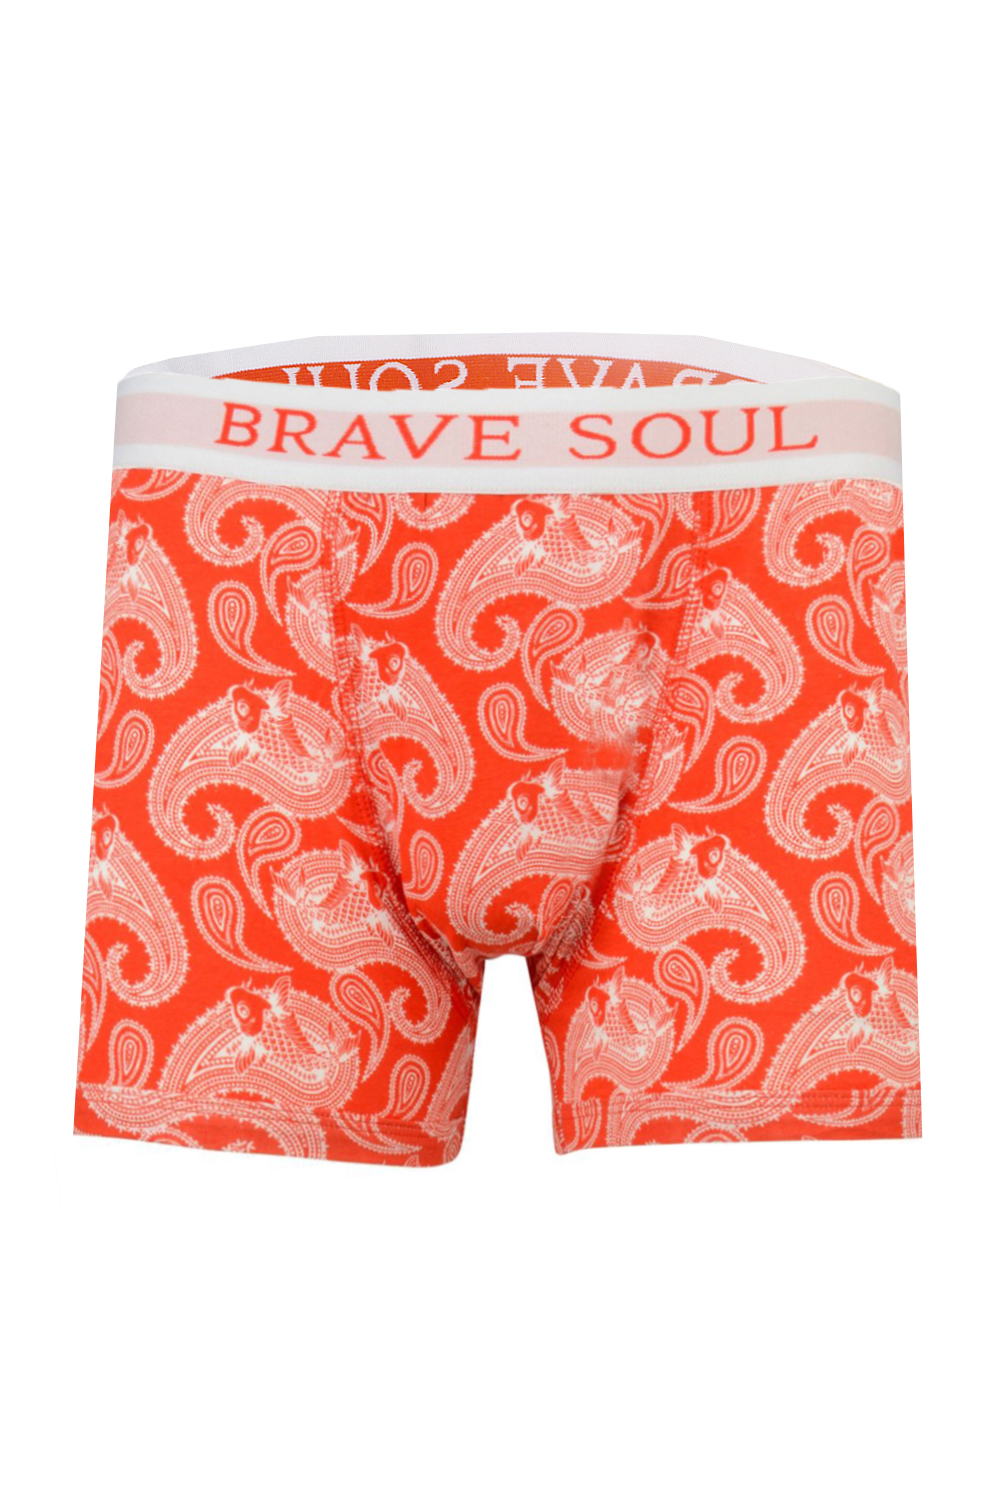 Brave Soul Mens Designer 2 Pack Boxer Shorts Stretch Jersey Multipack ...